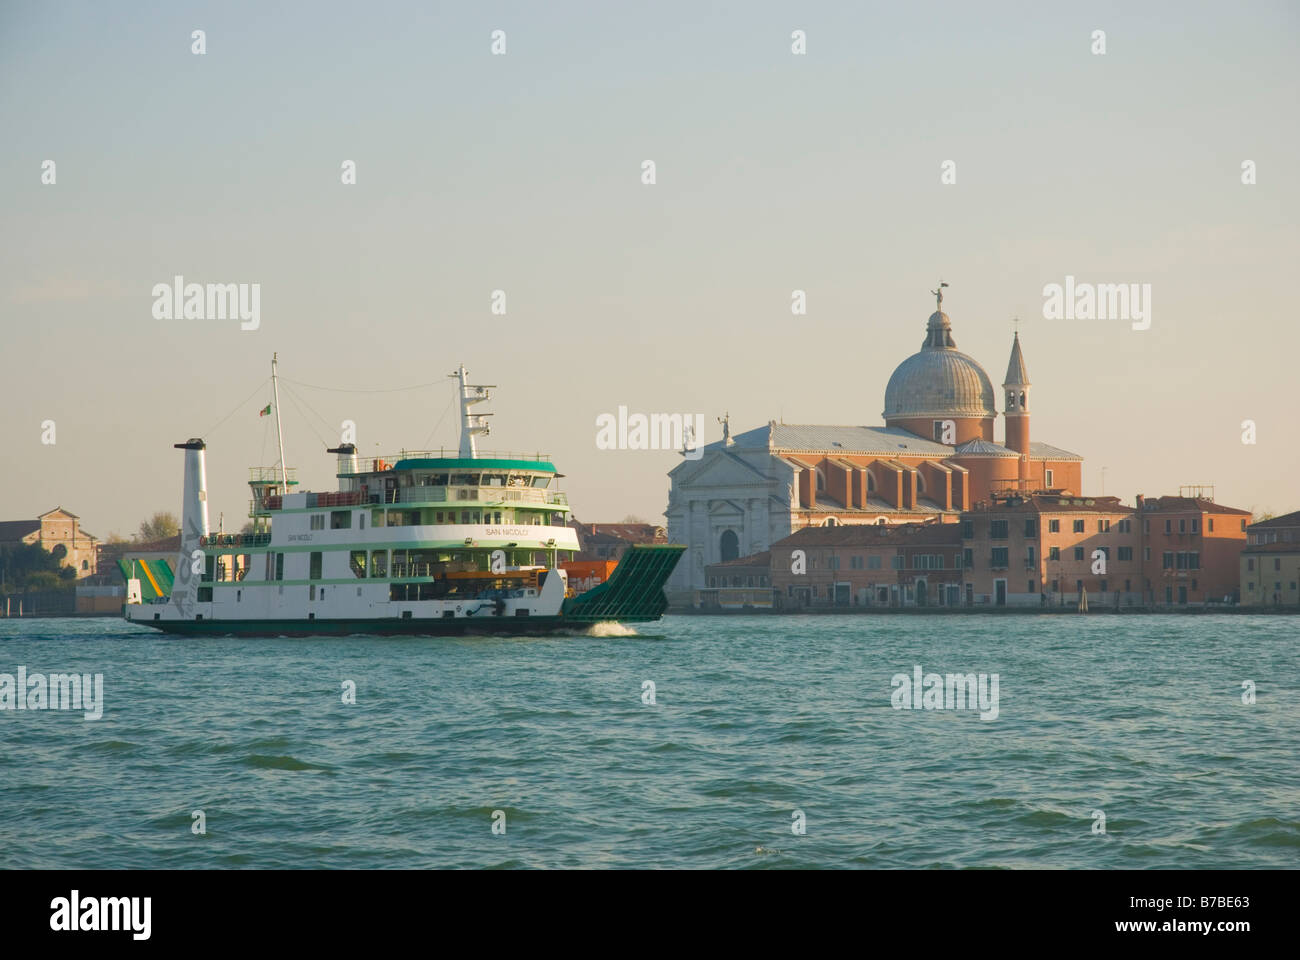 Adria ferry immagini e fotografie stock ad alta risoluzione - Alamy